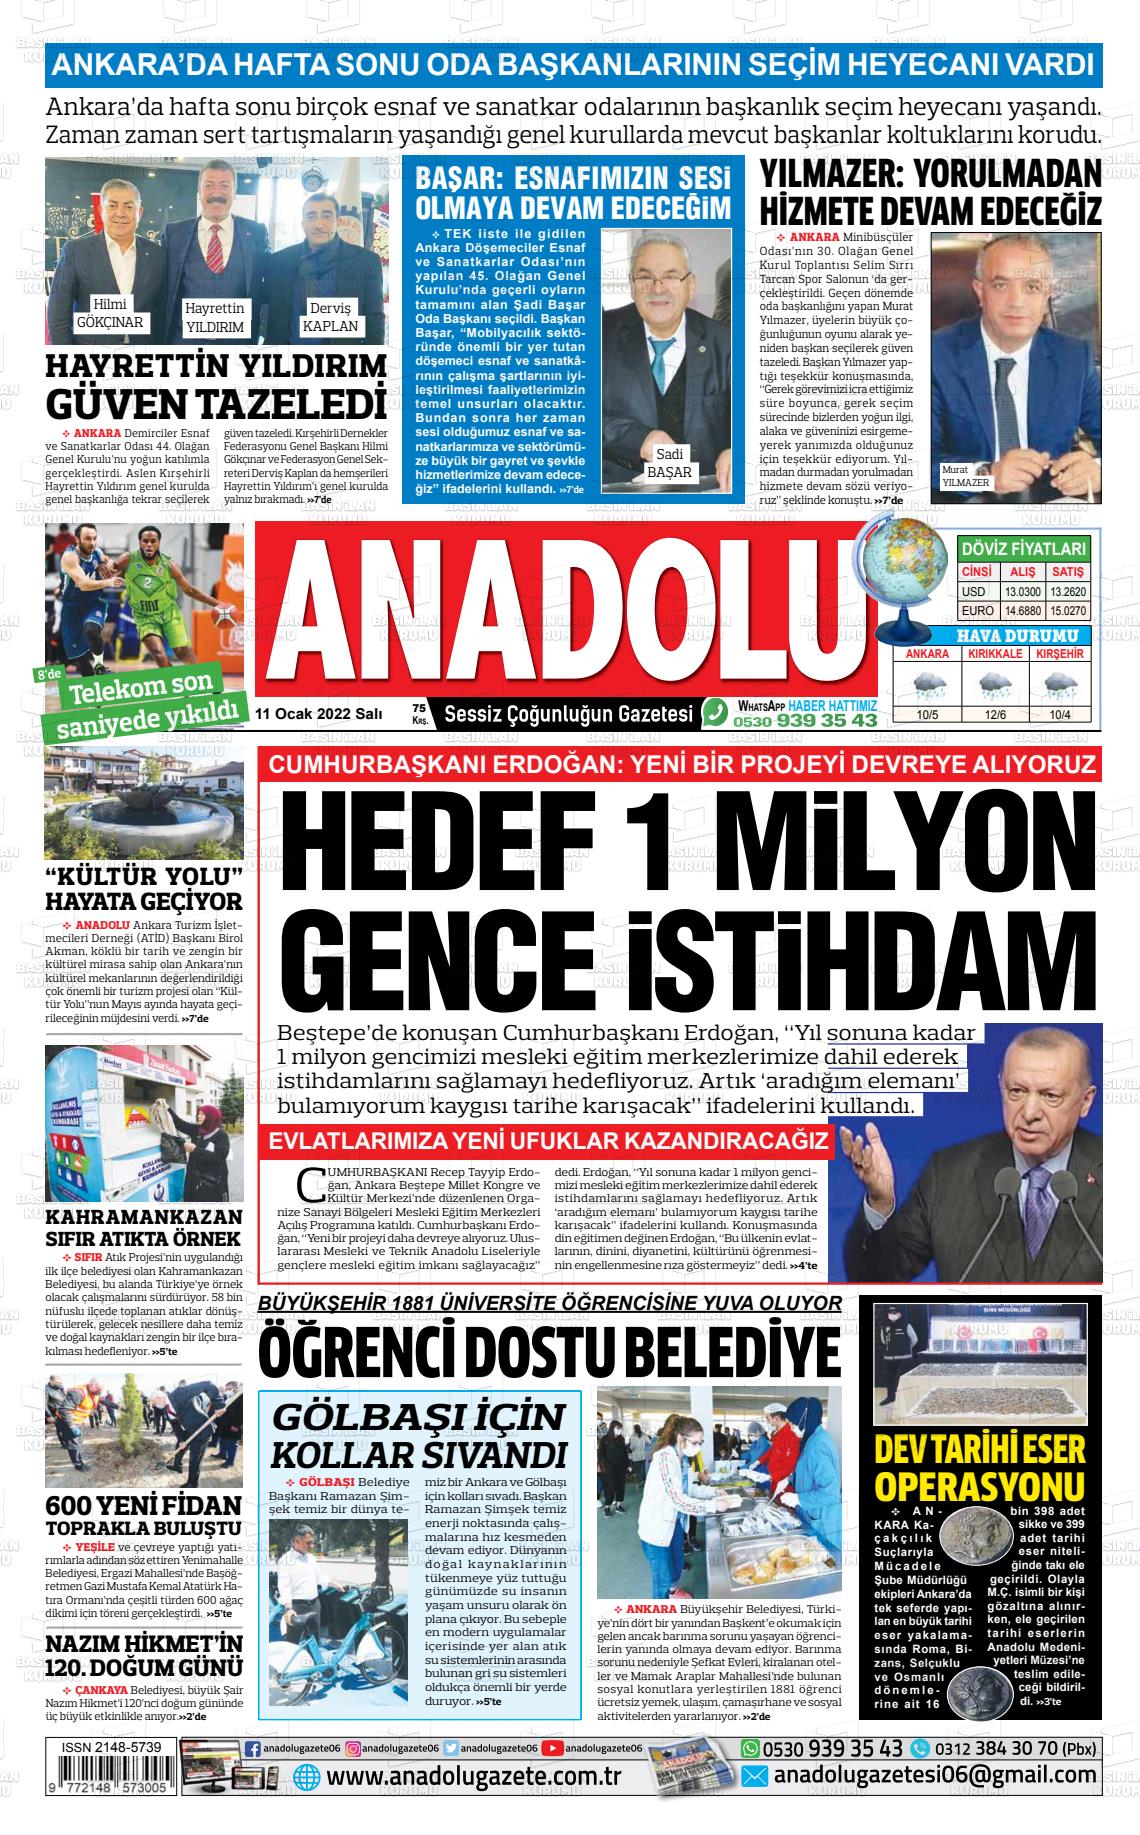 11 Ocak 2022 Ankara Anadolu Gazete Manşeti